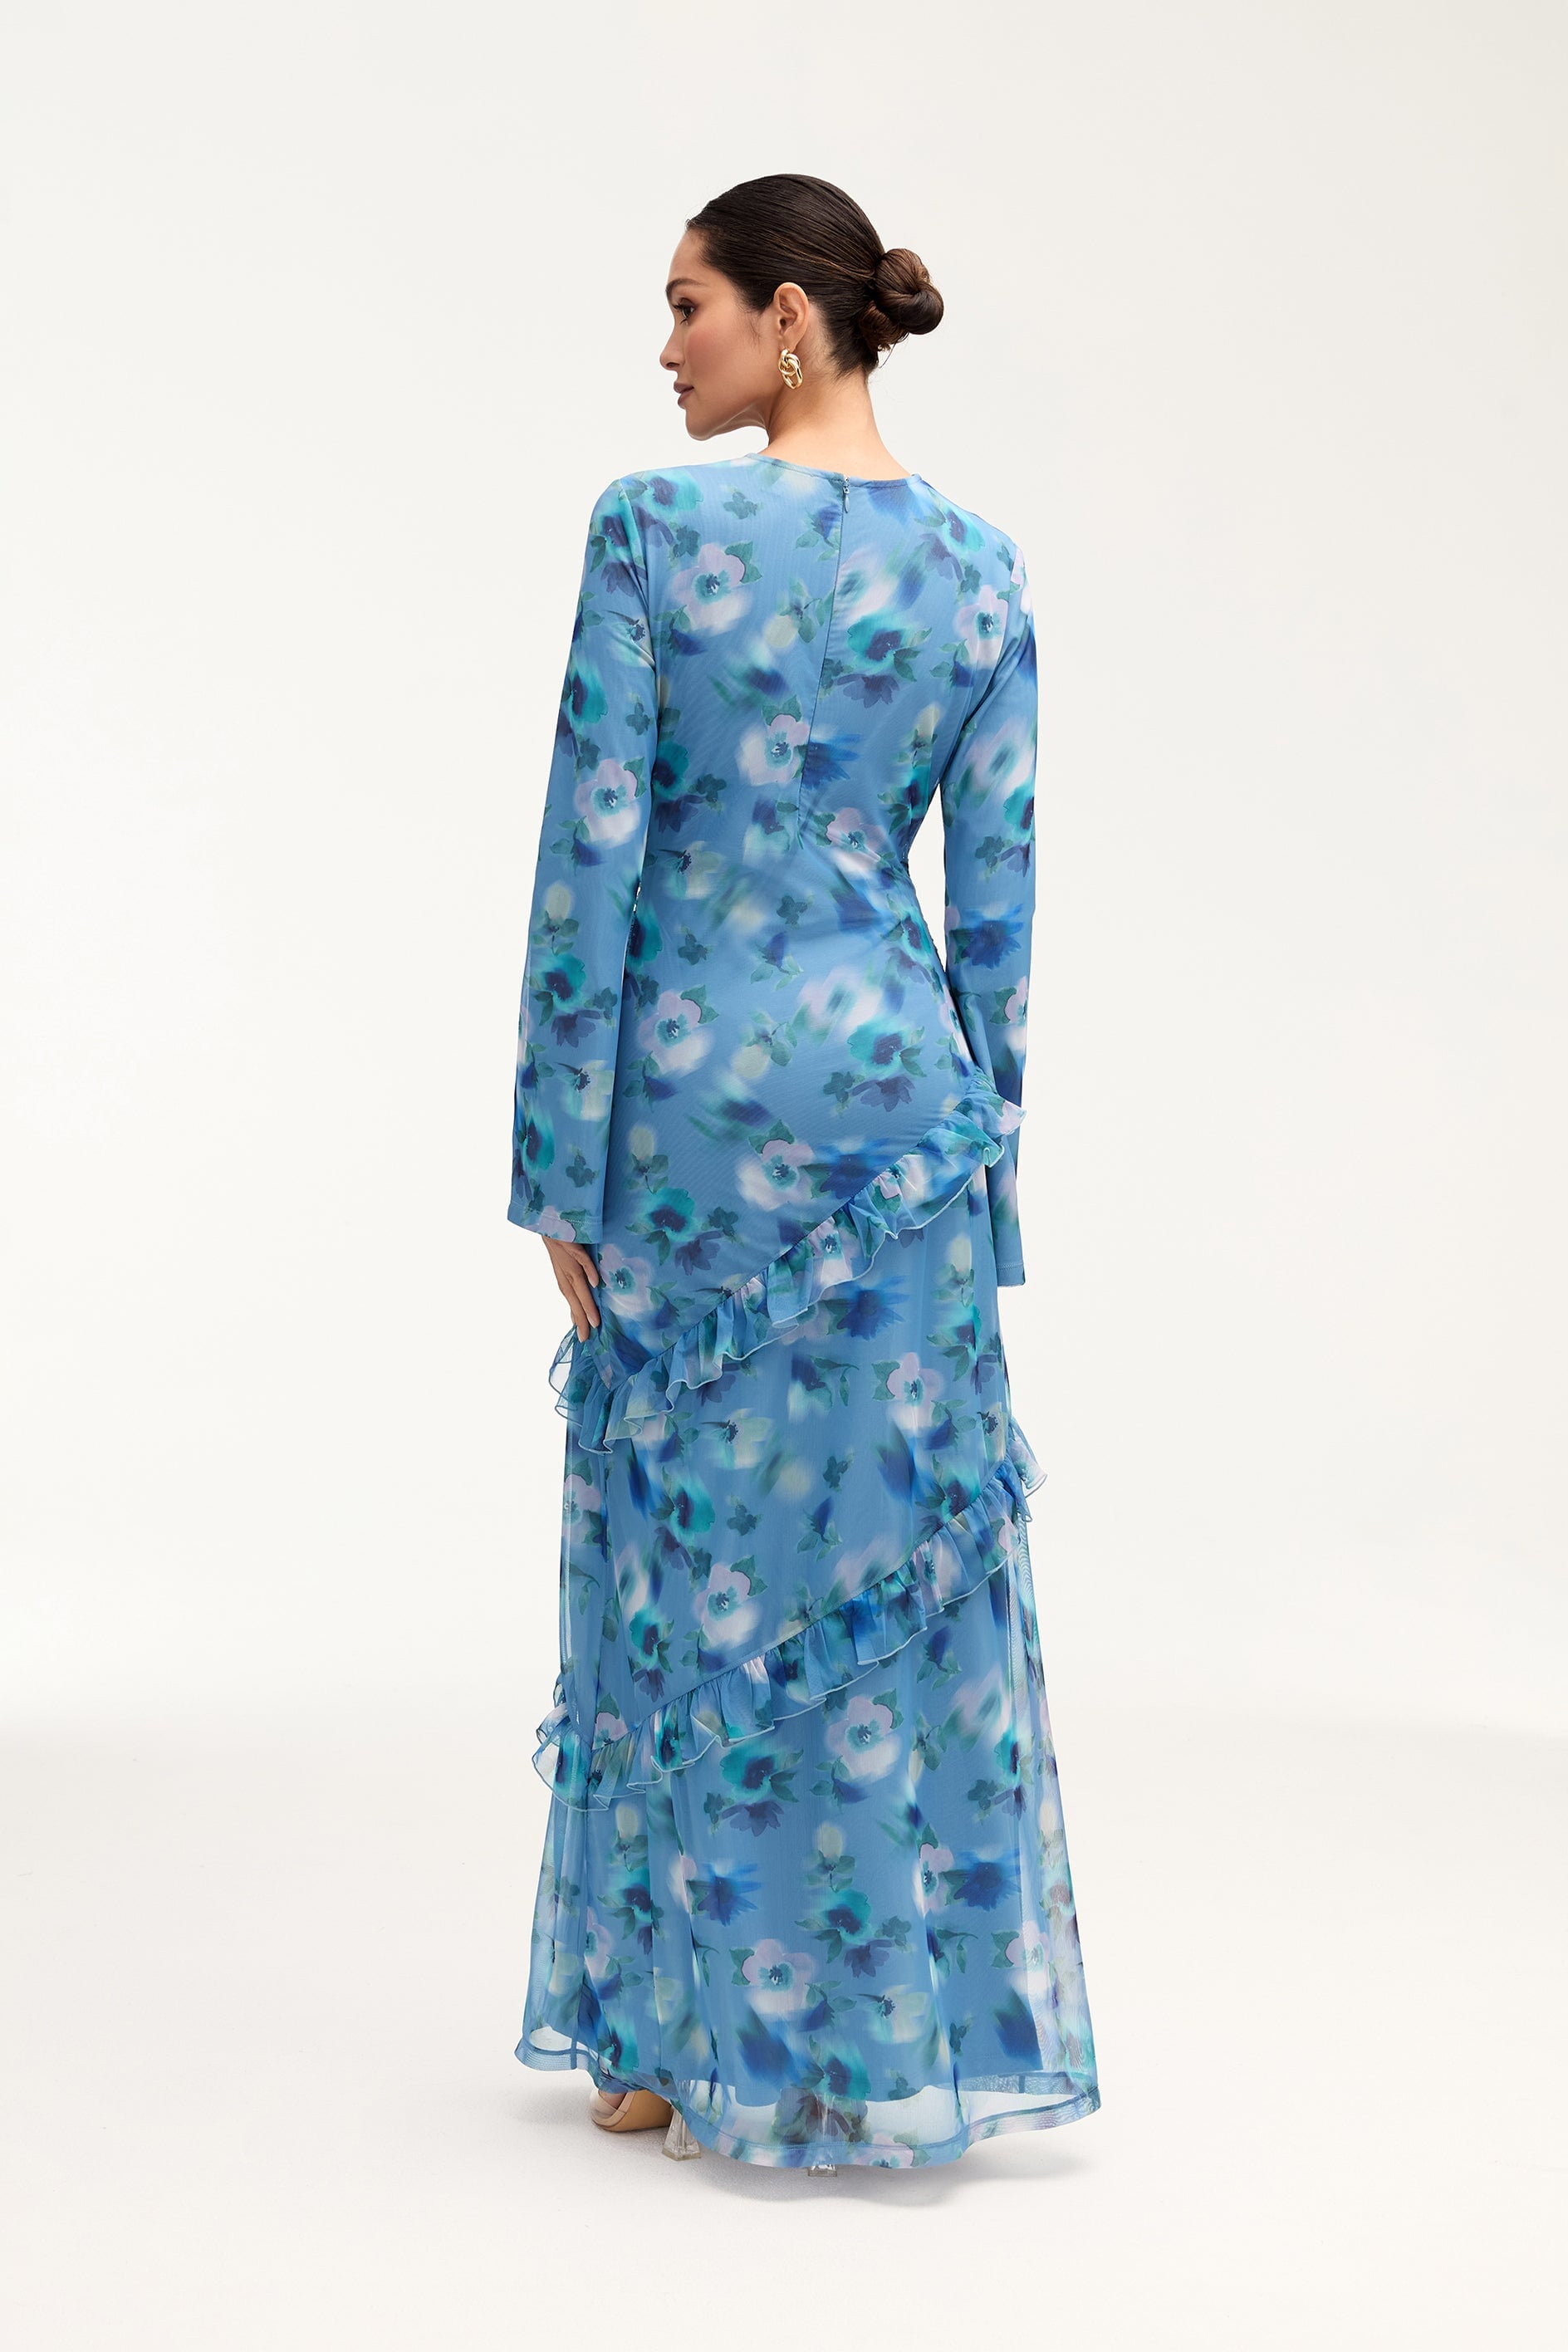 Sabrina Waterfall Mesh Maxi Dress - Floral Clothing Veiled 